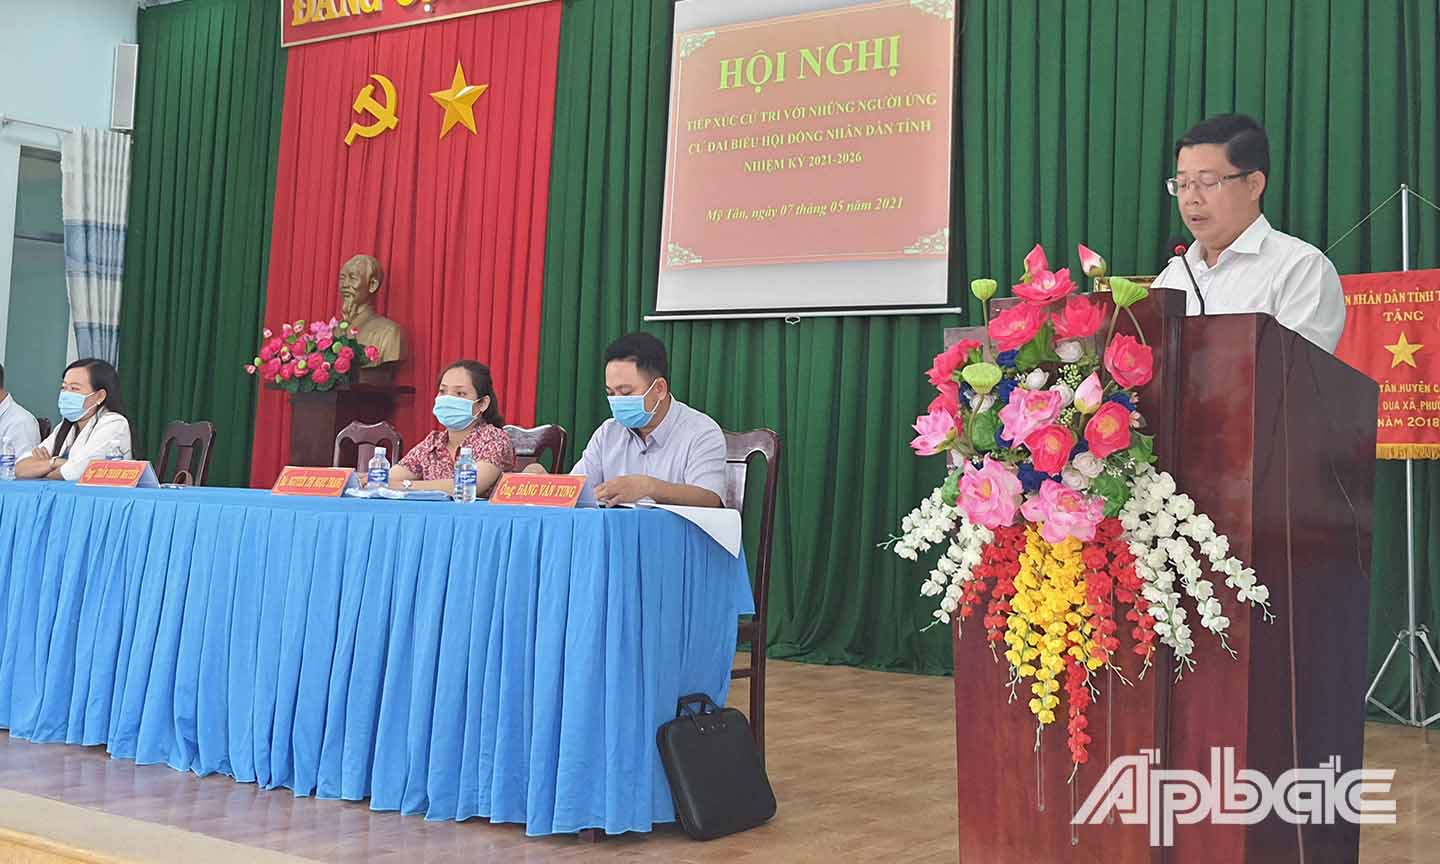 Ứng cử viên Trần Thanh Nguyên, Tỉnh ủy viên, Bí thư Huyện ủy Cái Bè trình bày chương trình hành động tại buổi tiếp xúc.